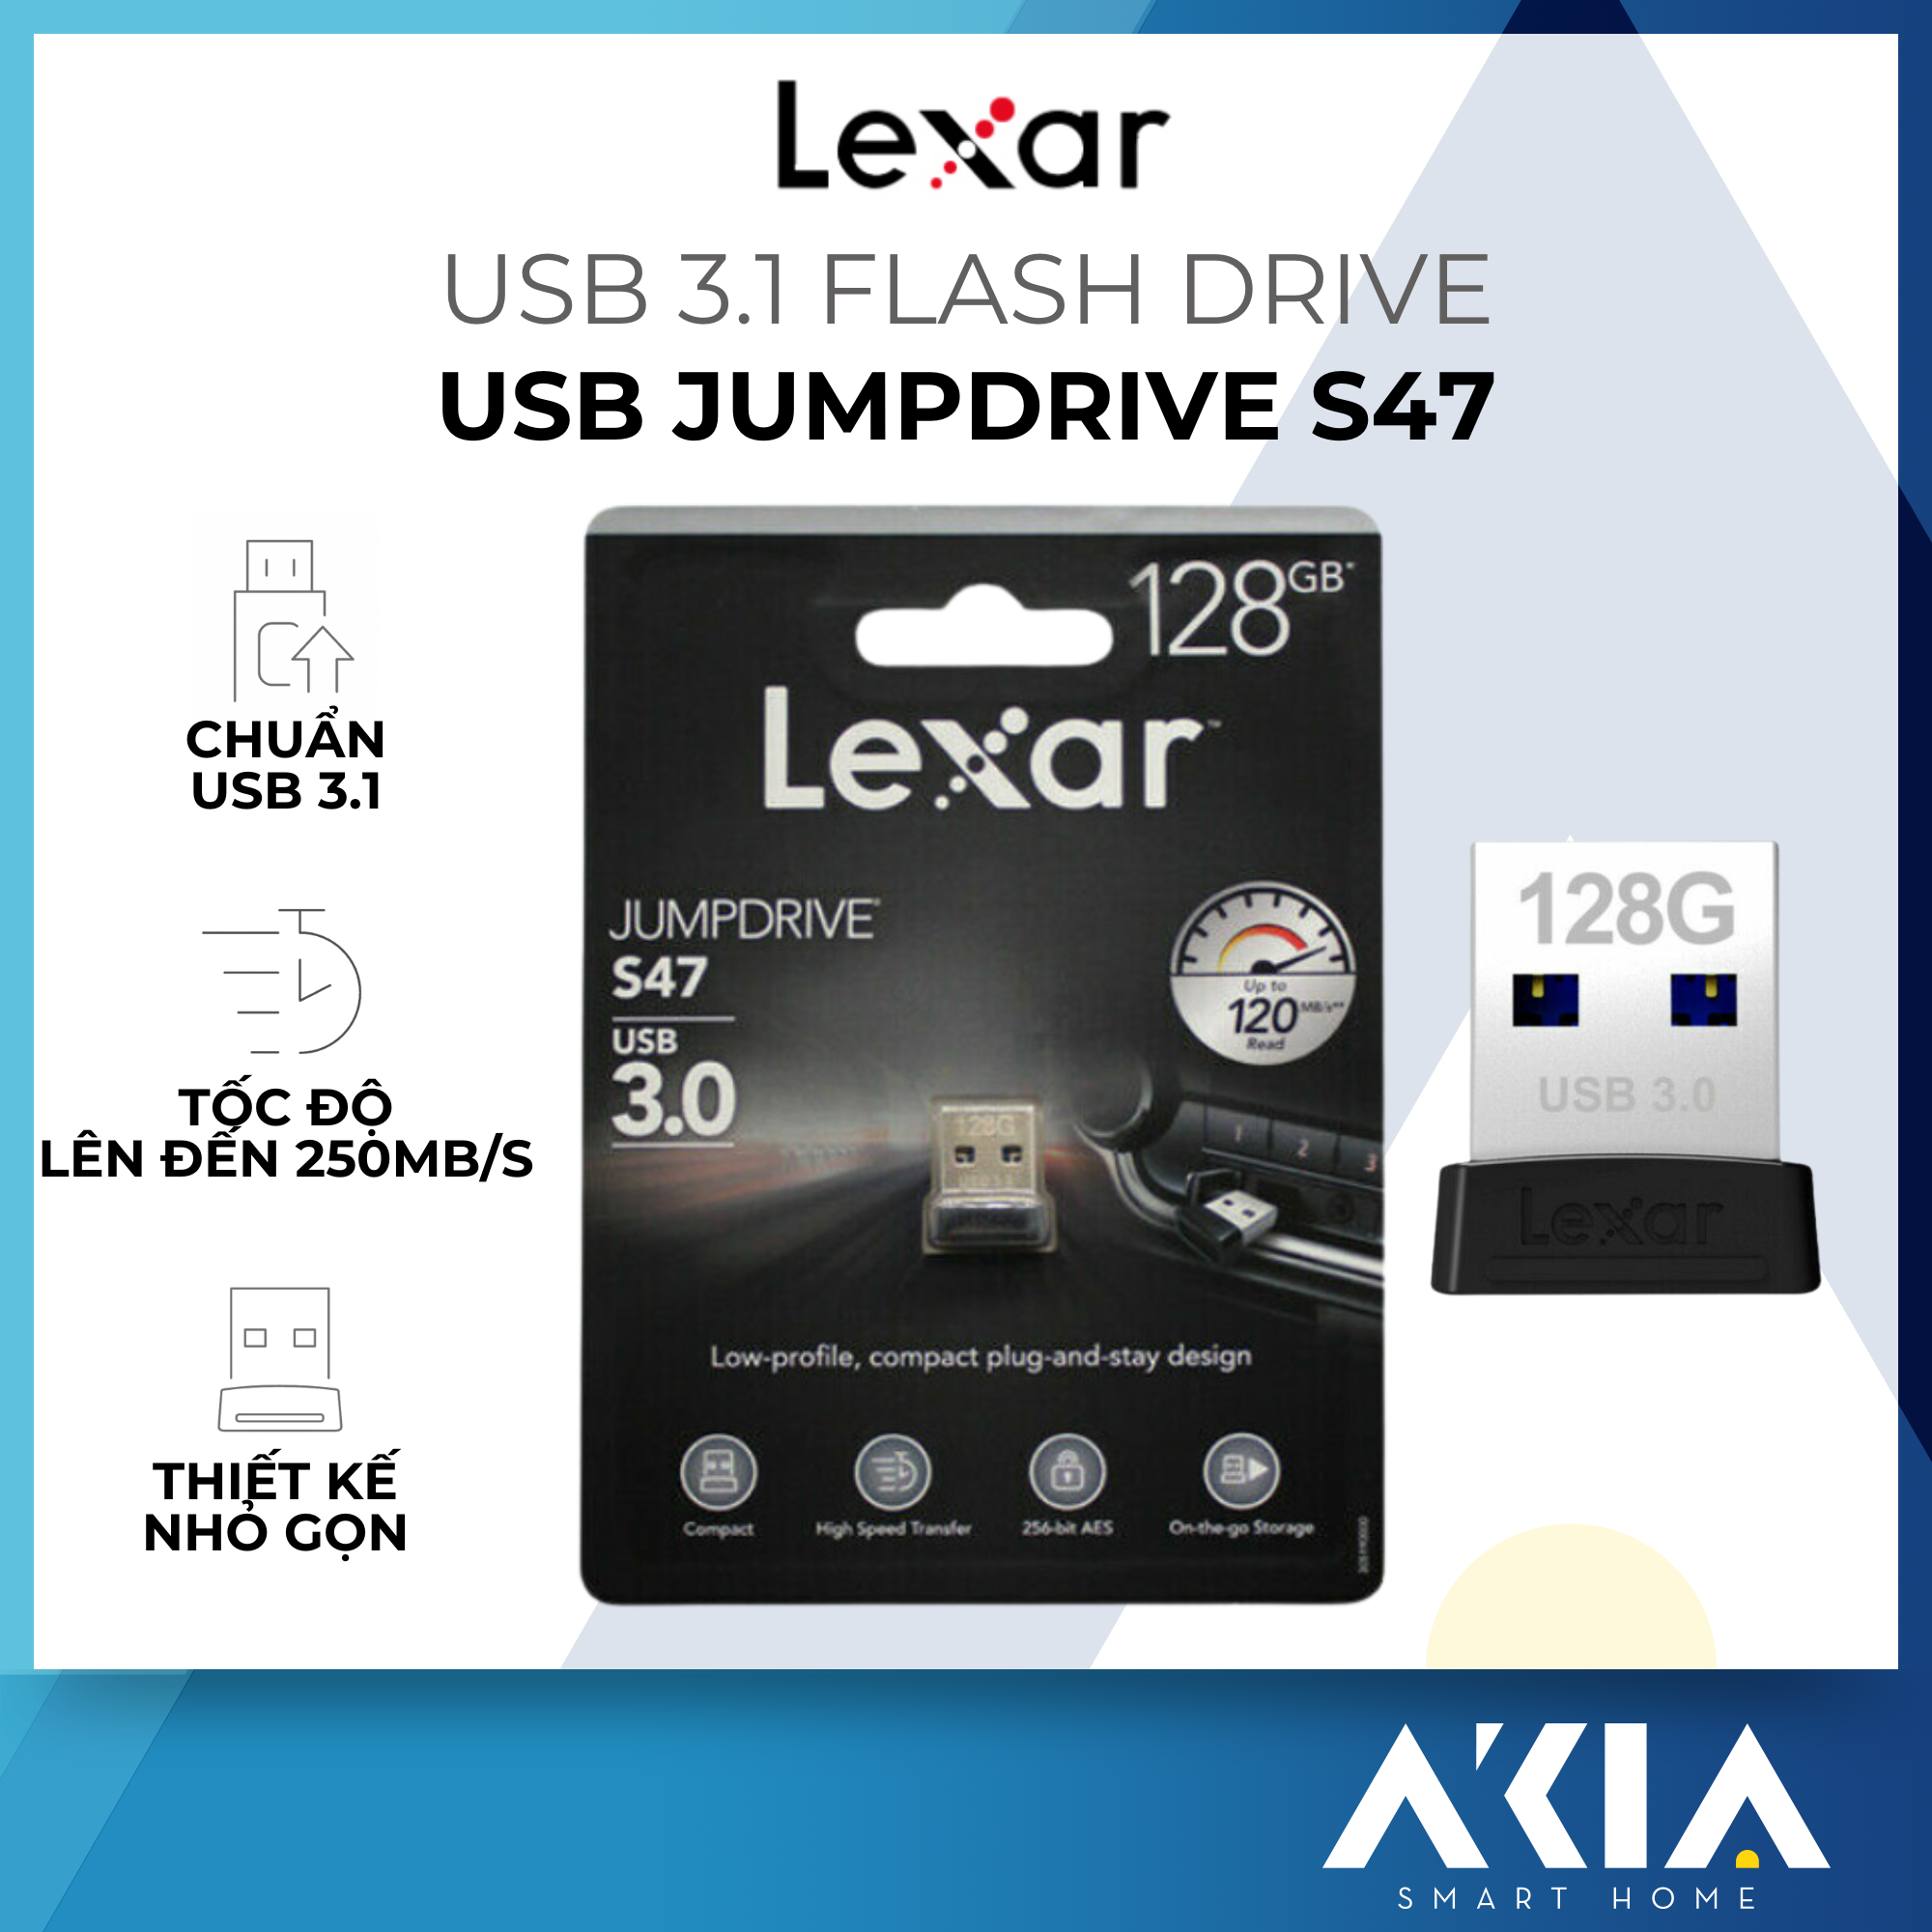 USB 3.1 Lexar S47 JumpDrive Flash Drive - Chuẩn USB 3.1, Tốc độ đọc 250mb/s - HÀNG CHÍNH HÃNG